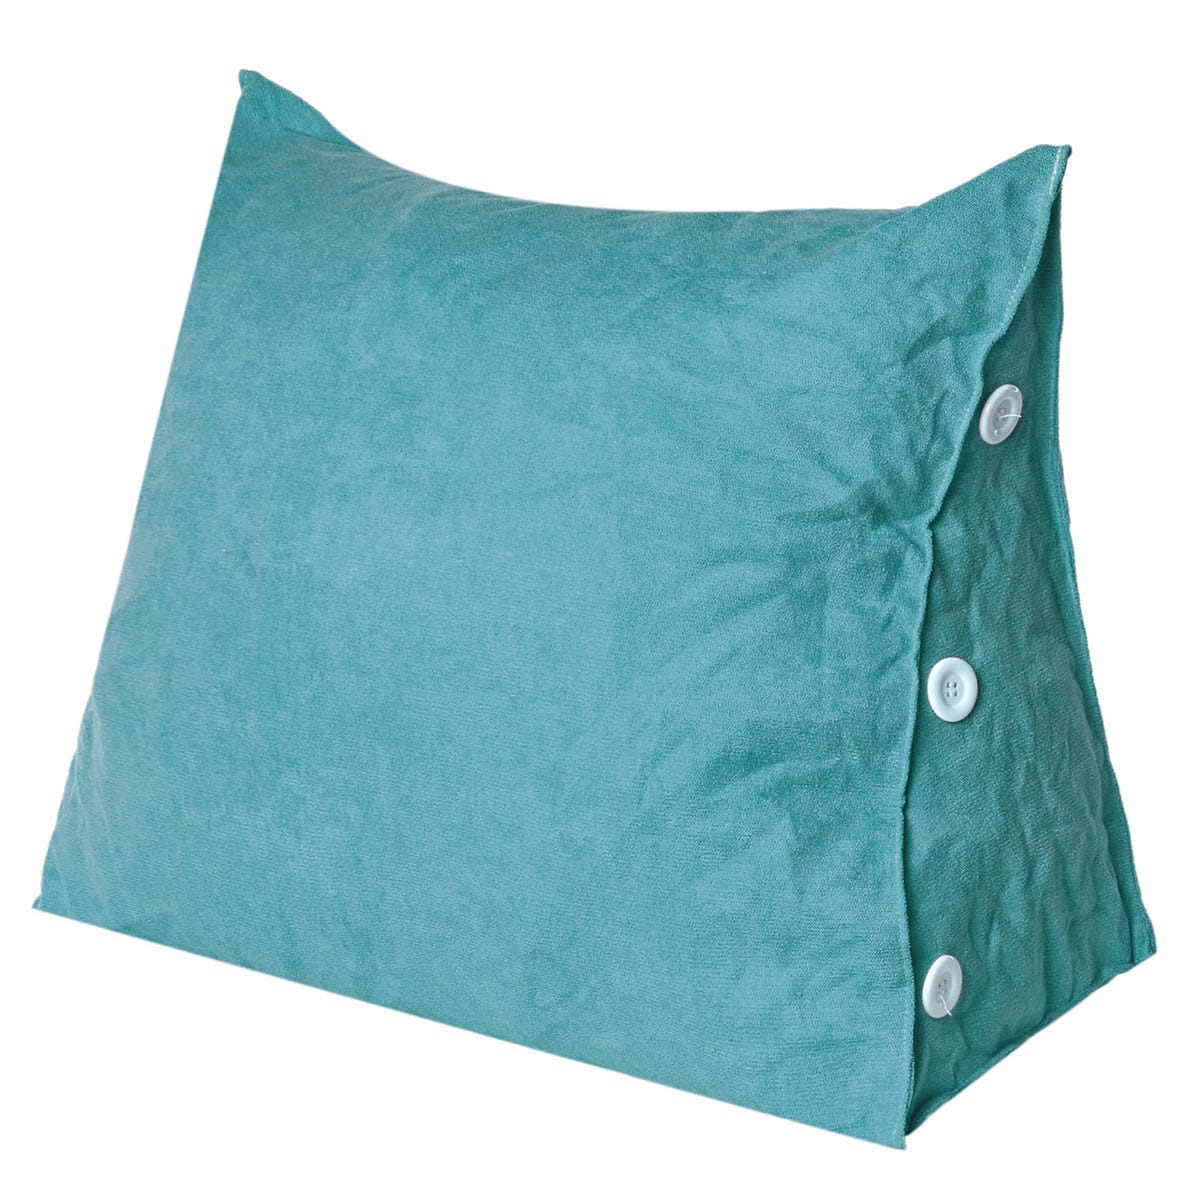 Cojín triangular para lectura, cojín para sofá, cabecero, respaldo,  almohada cervical, soporte lumbar, respaldo, 60 x 50 x 22 cm, azul